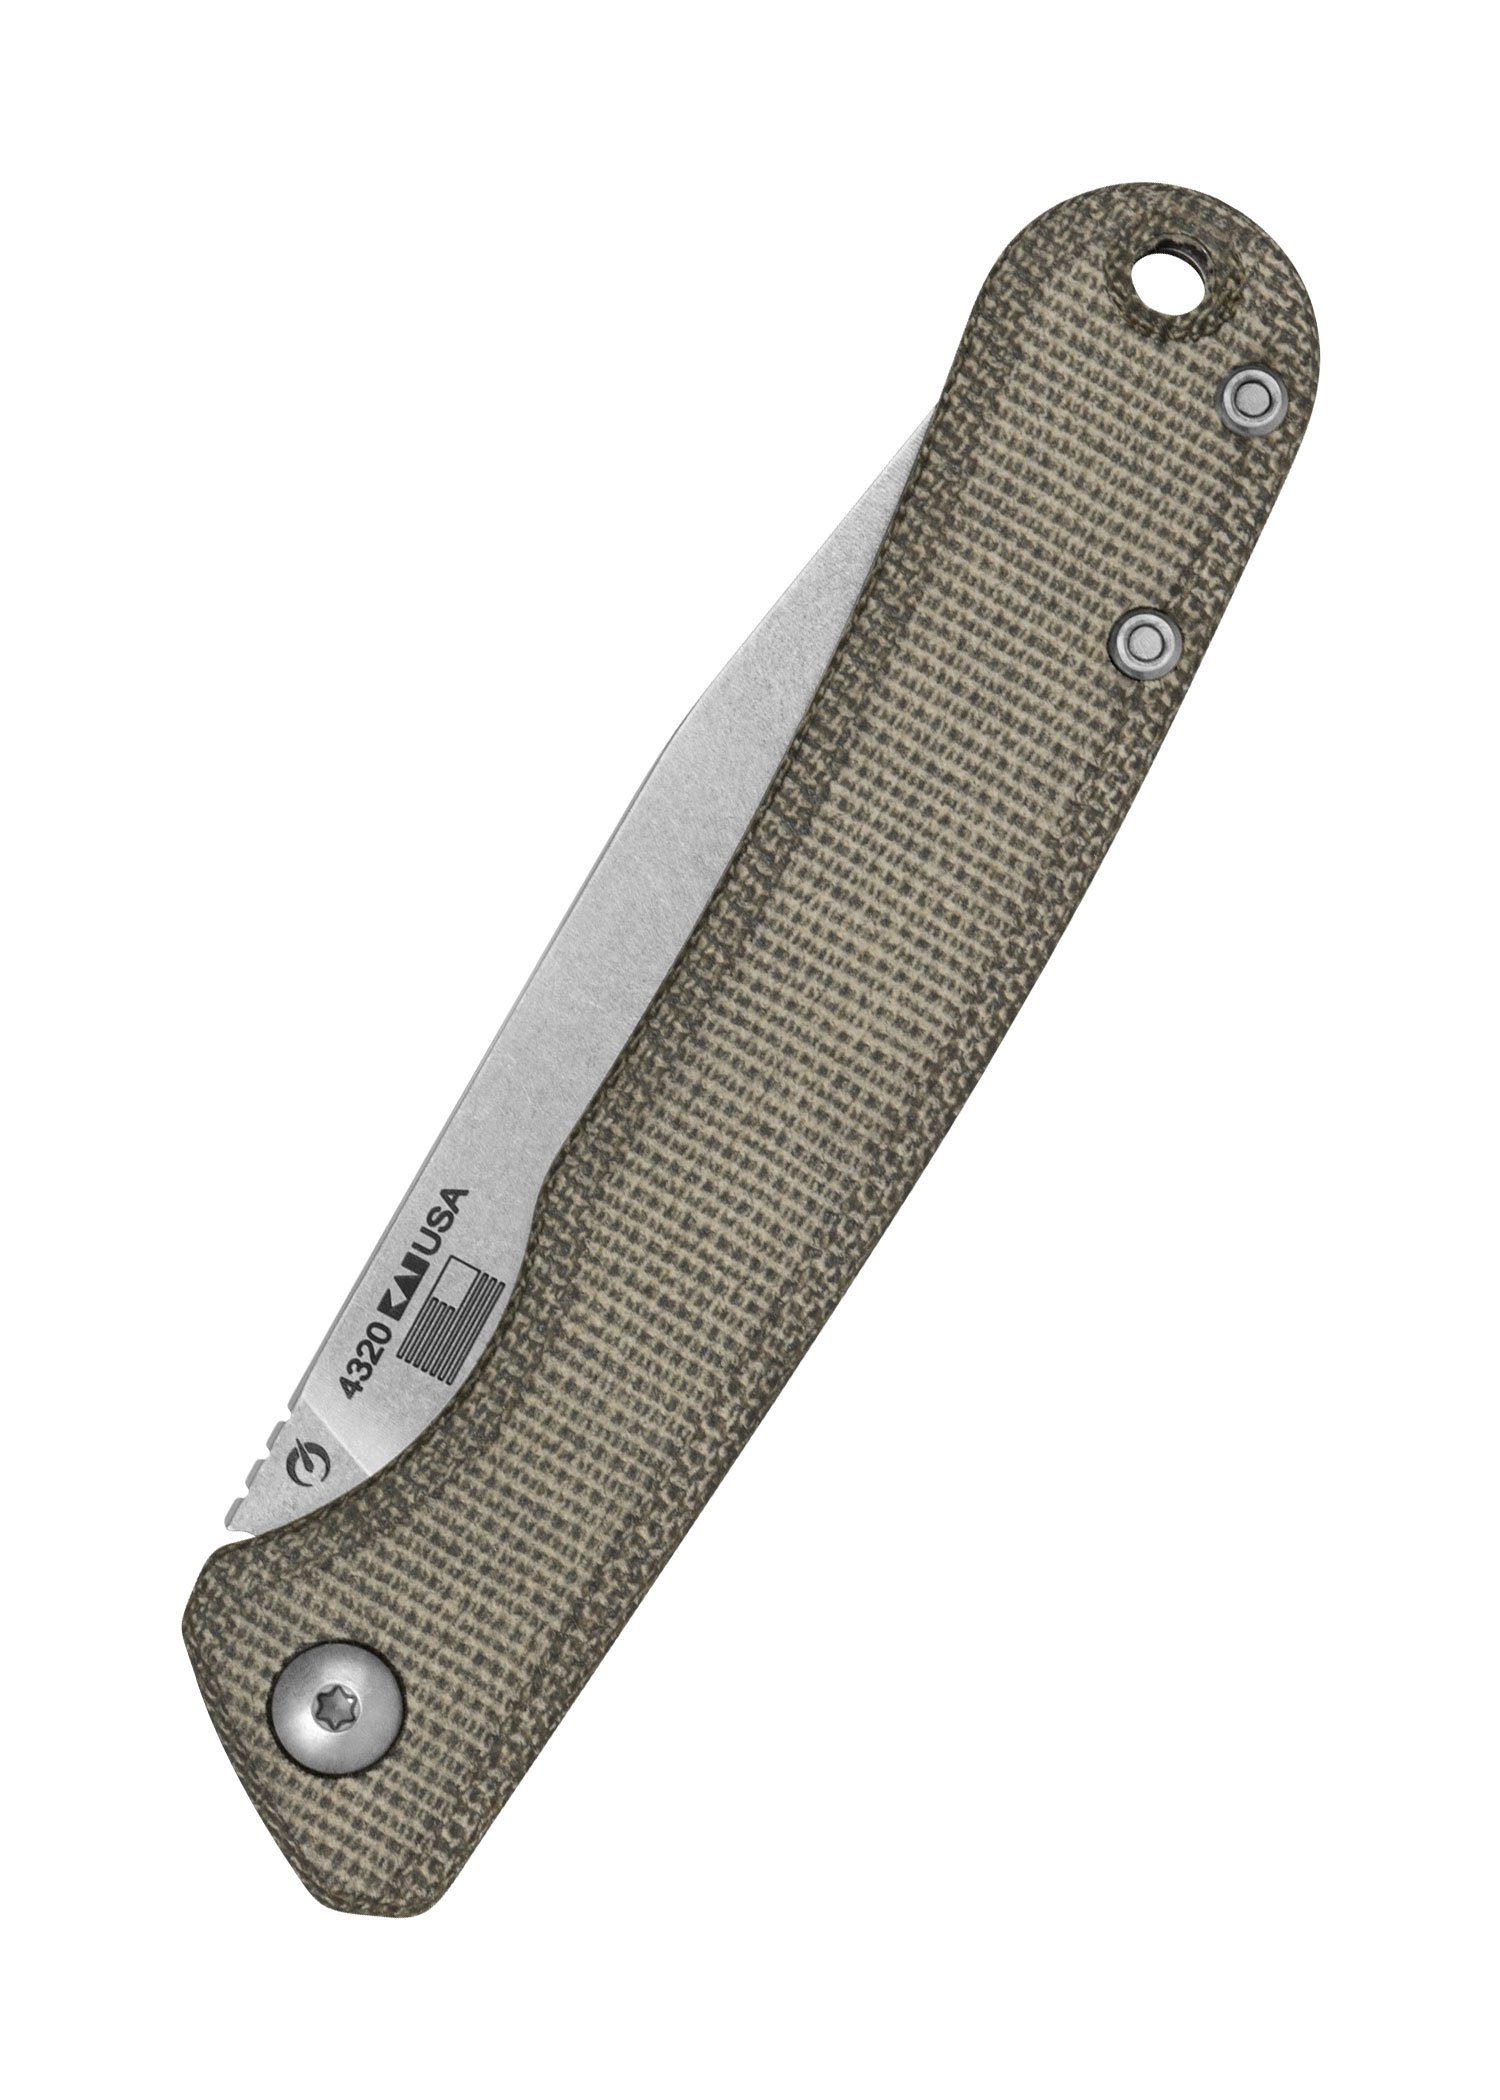 Kershaw Knives Taschenmesser Federalist Kershaw Slipjoint - mit Tachenmesser Pulverstahl CPM154